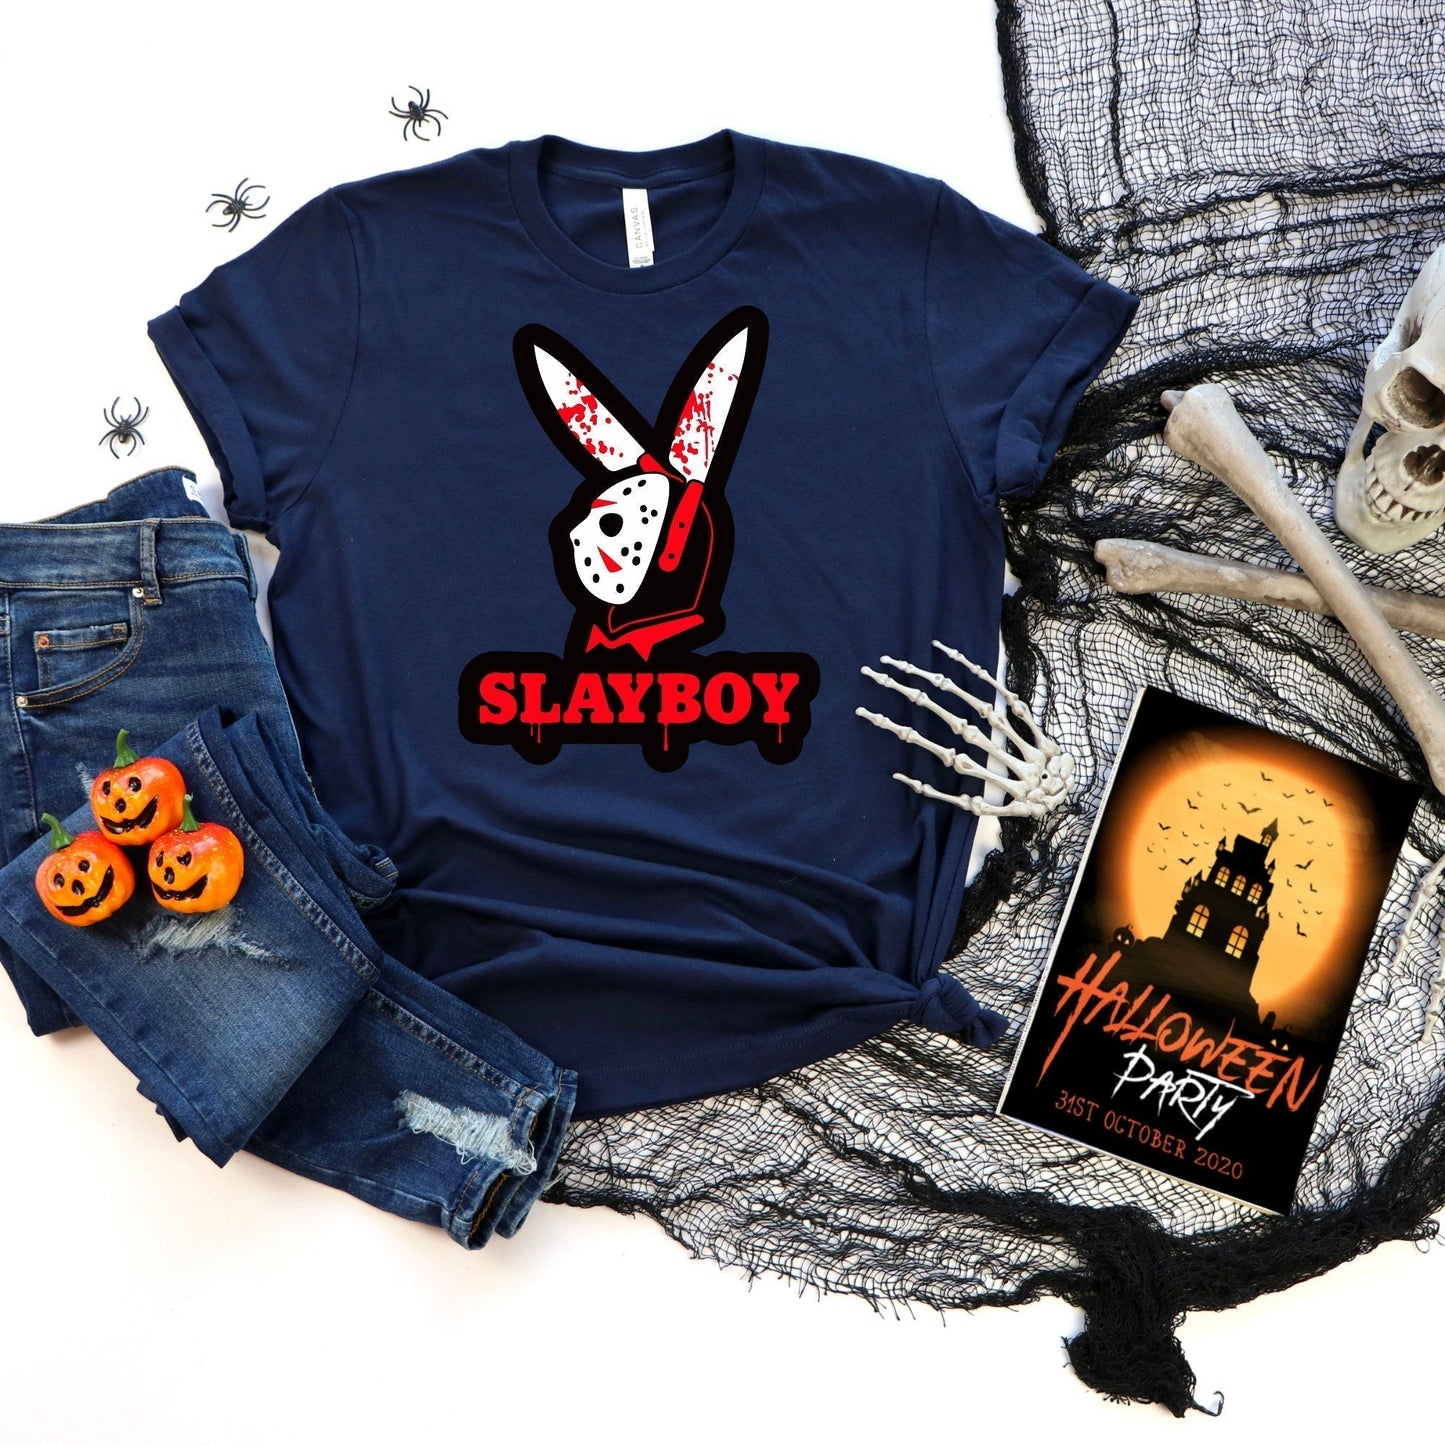 Horror Movie Shirt, Vintage Horror Shirt, Horror Movie T Shirt, Horror Friends Shirt, Halloween Sweatshirt, Horror Characters Fan Gift HMDesignStudioUS